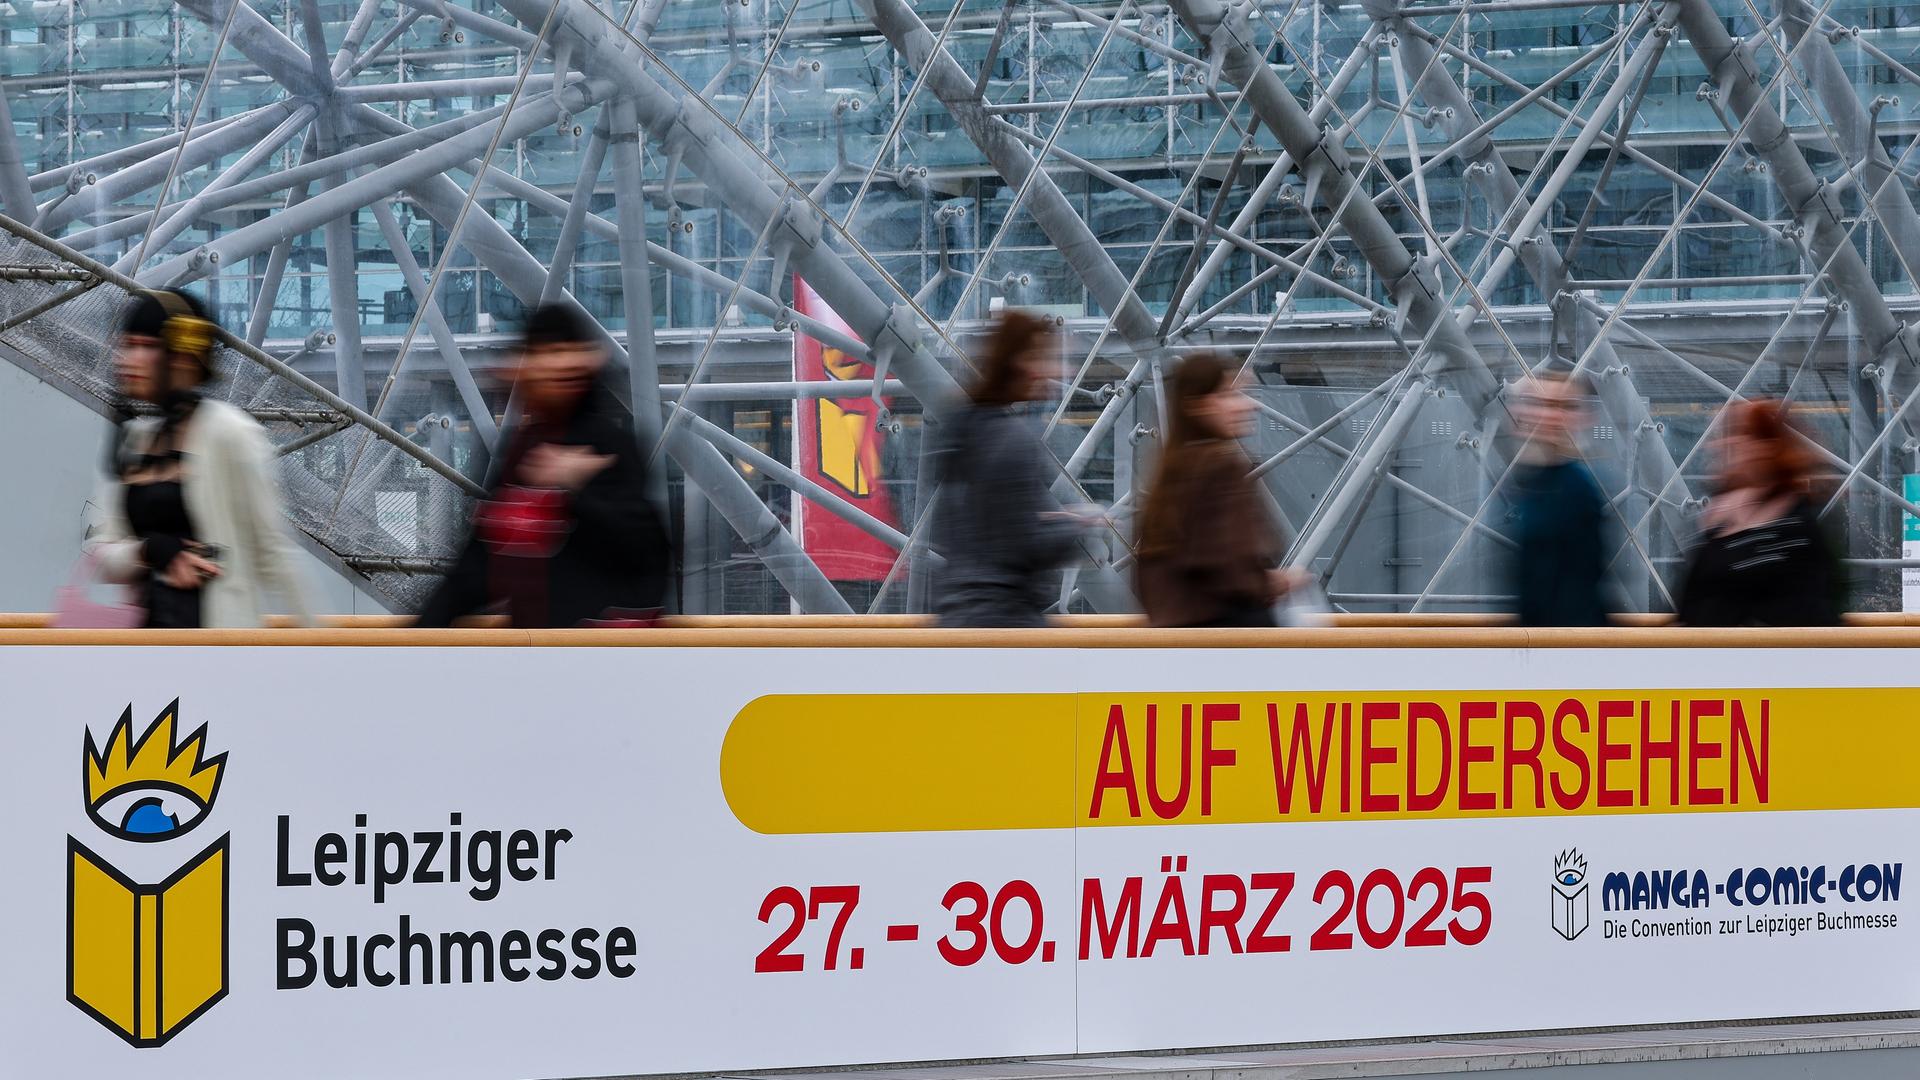 Besucher gehen auf der Leipziger Buchmesse an einem Schild "Auf Wiedersehen" entlang. A